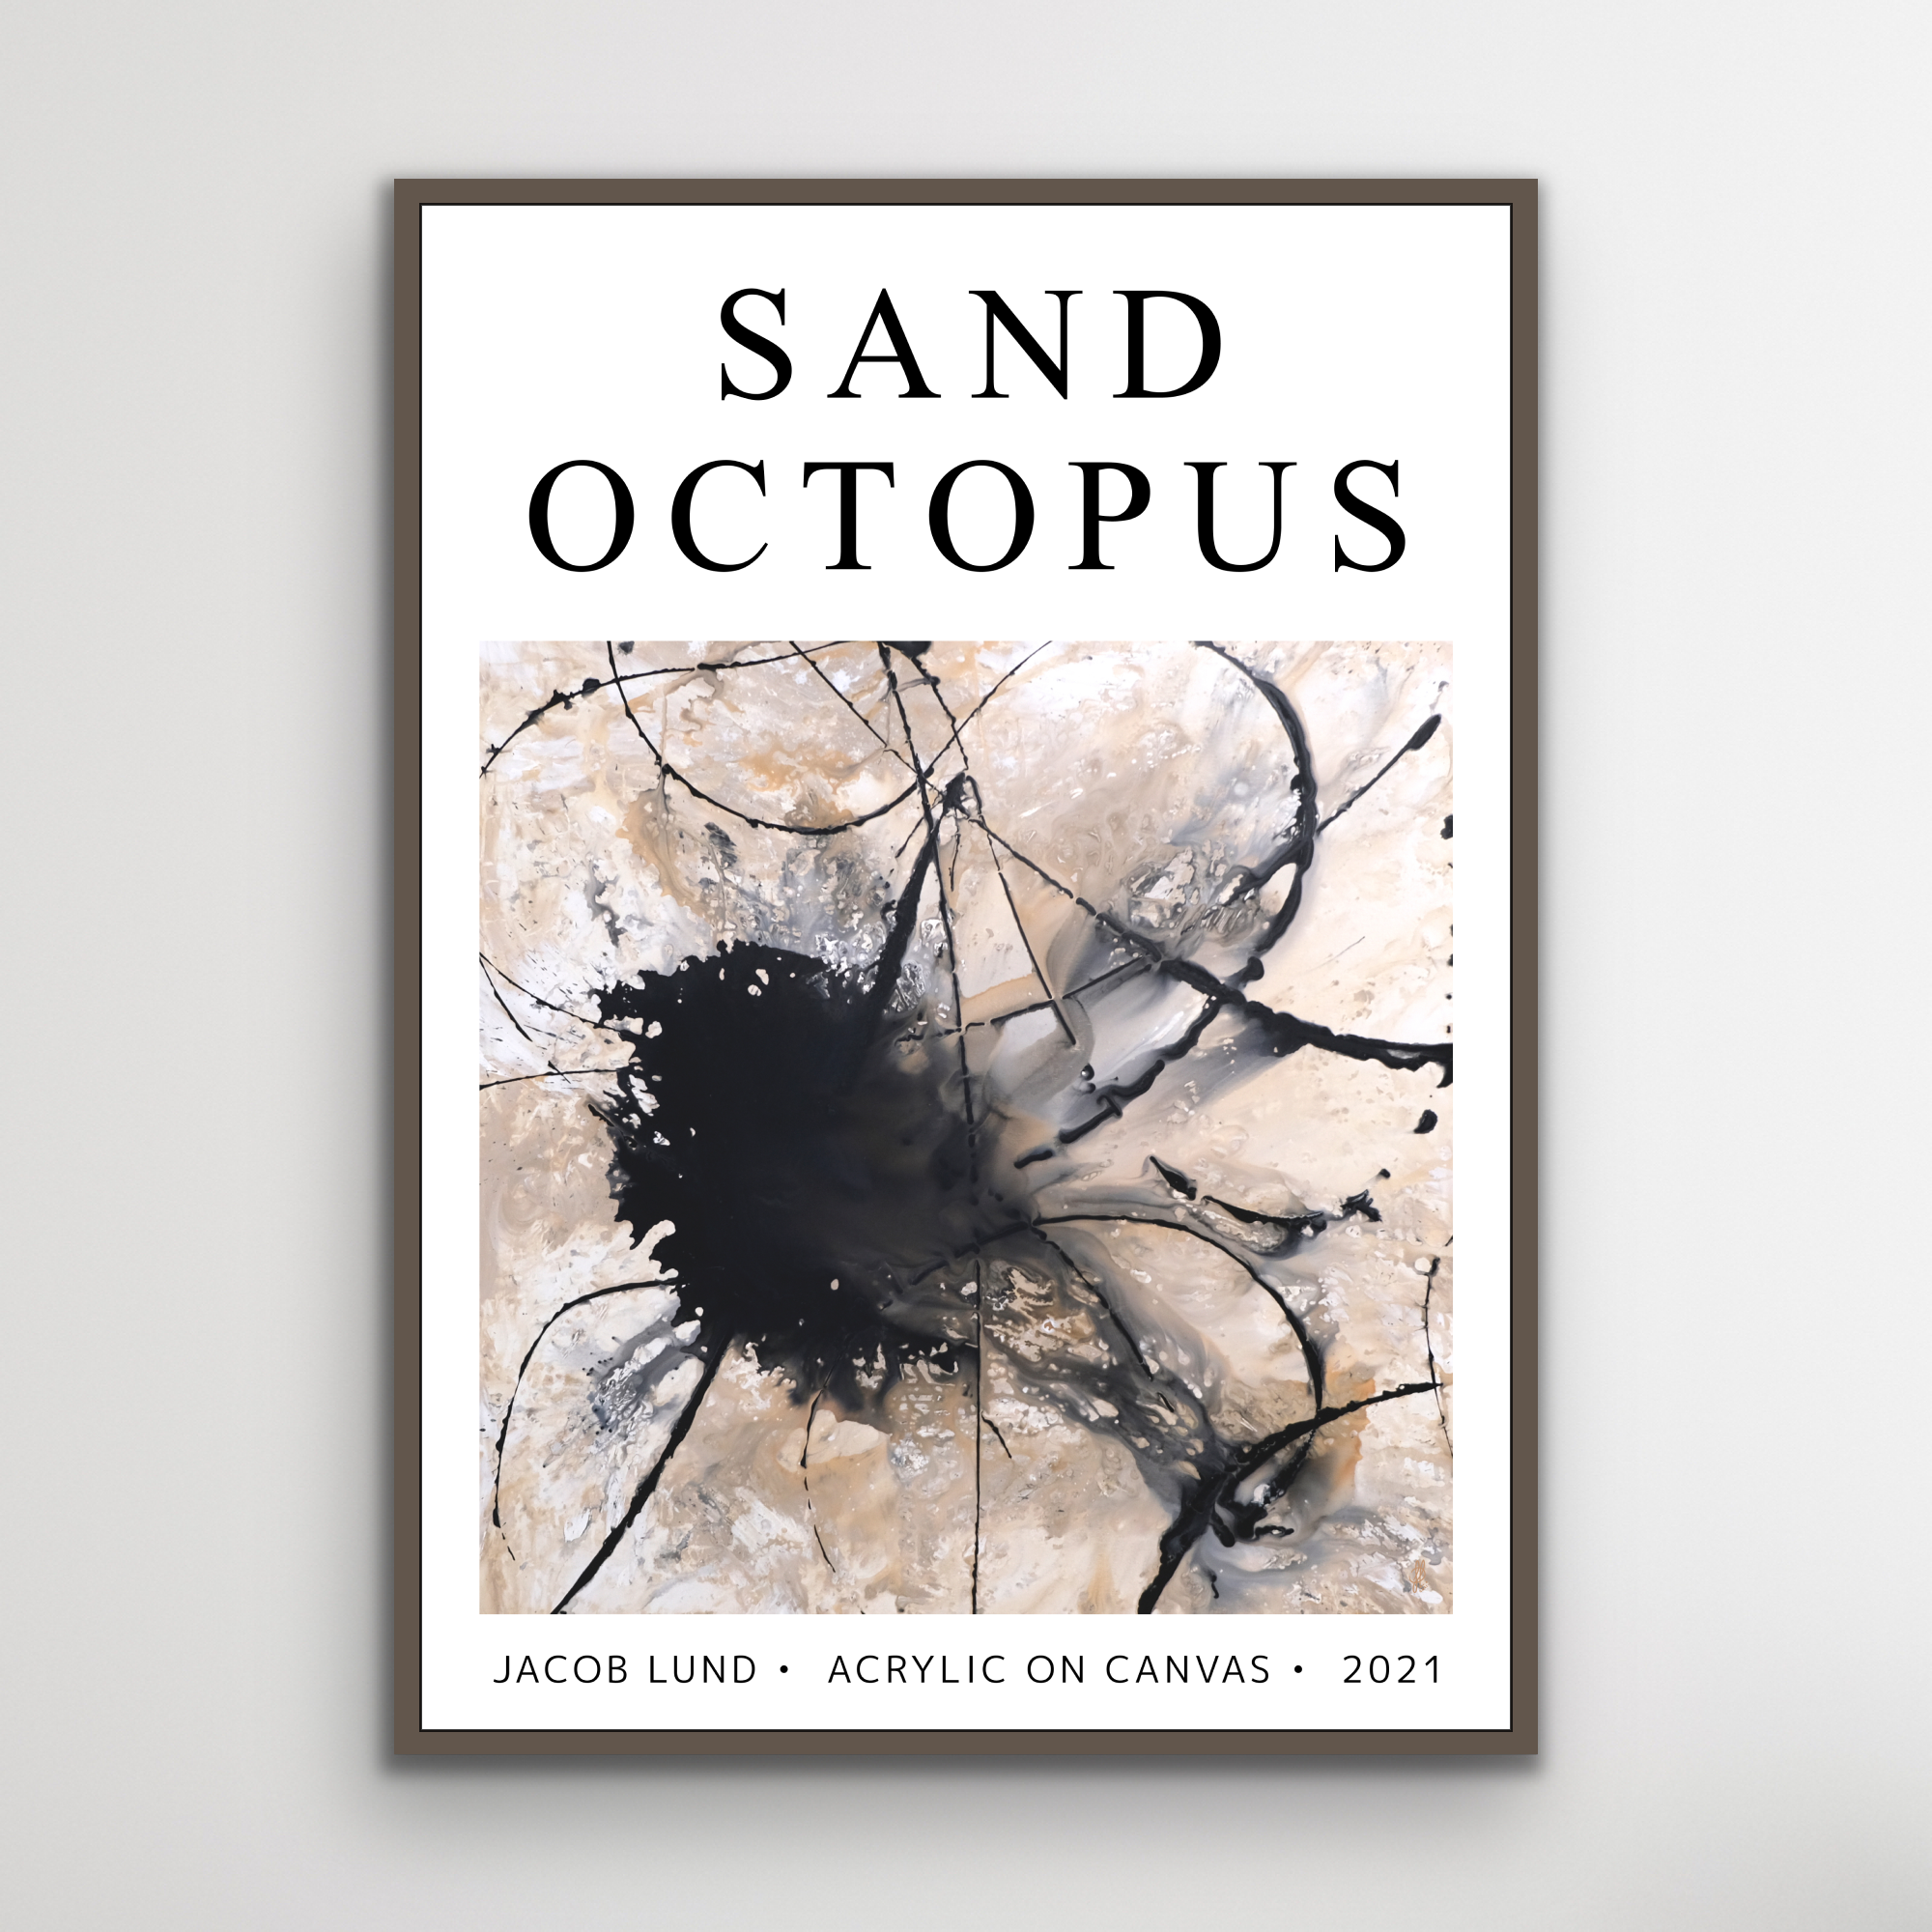 Plakat: "Sand Octopus" (weißer Hintergrund)